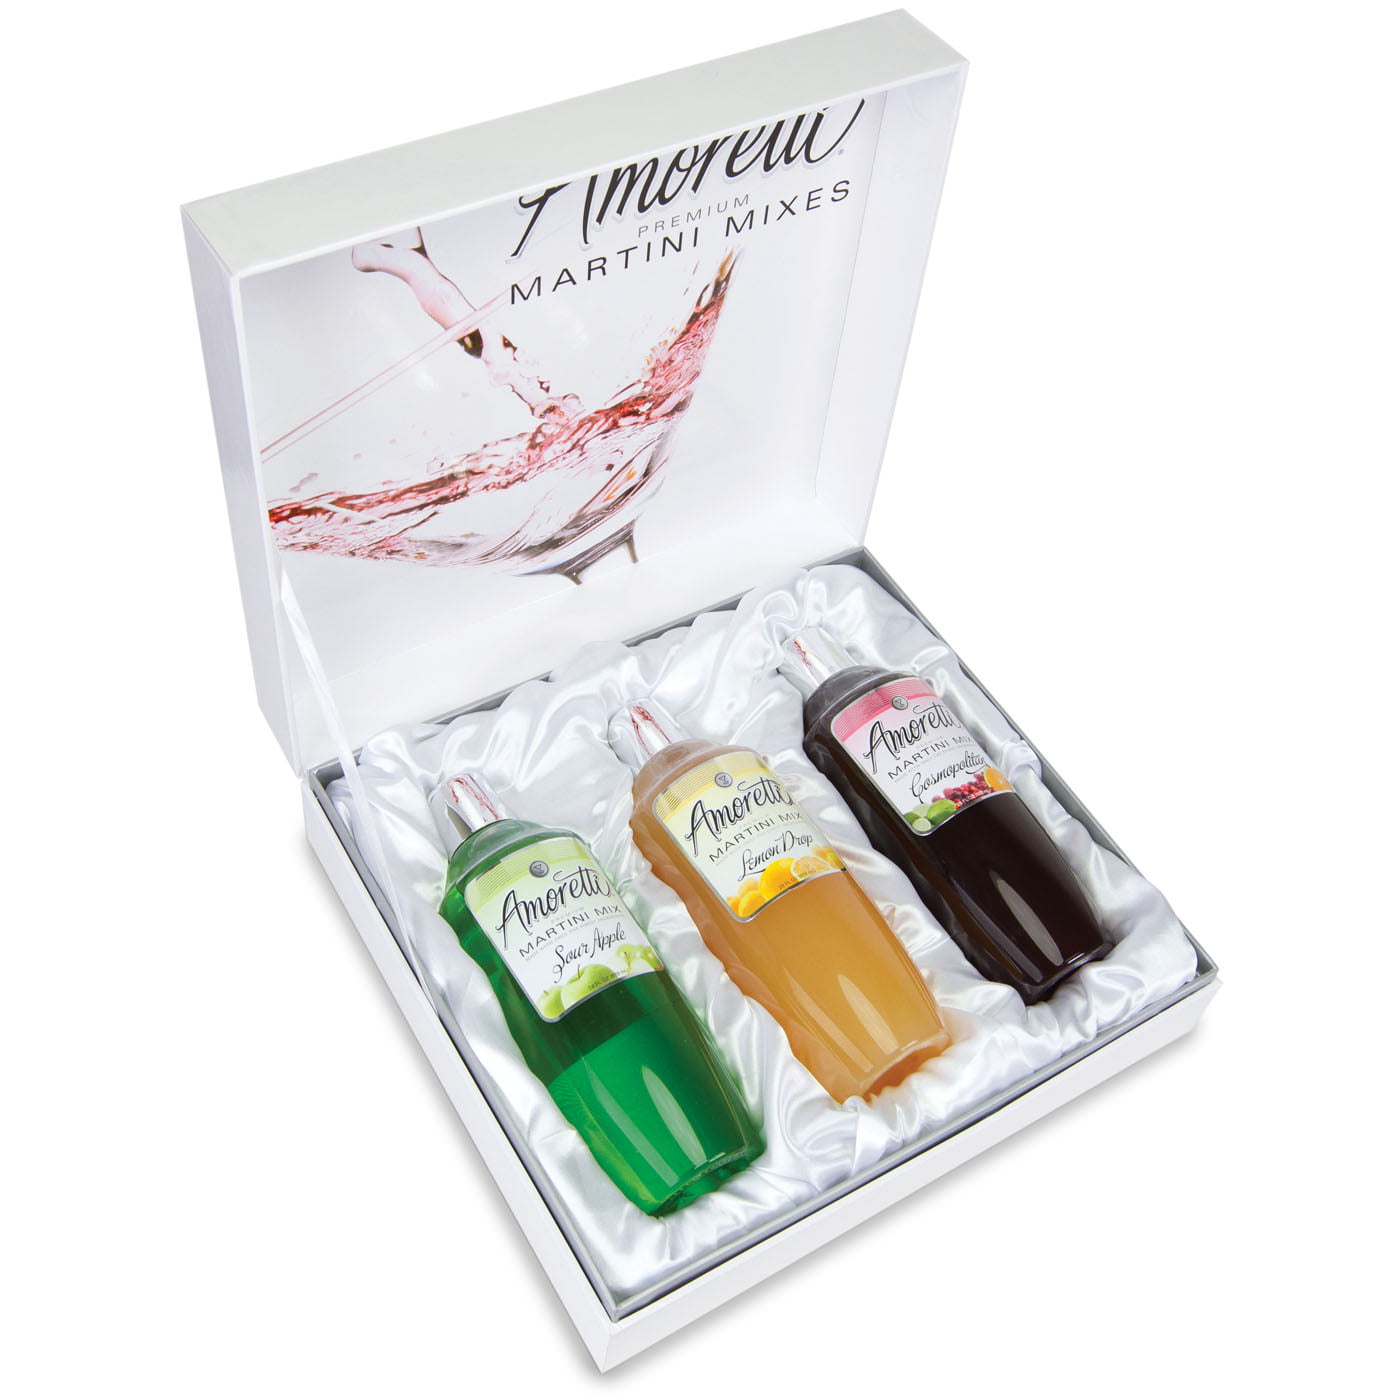 Amoretti Premium Martini Mix Gift Set (28 fl oz) (Cosmo